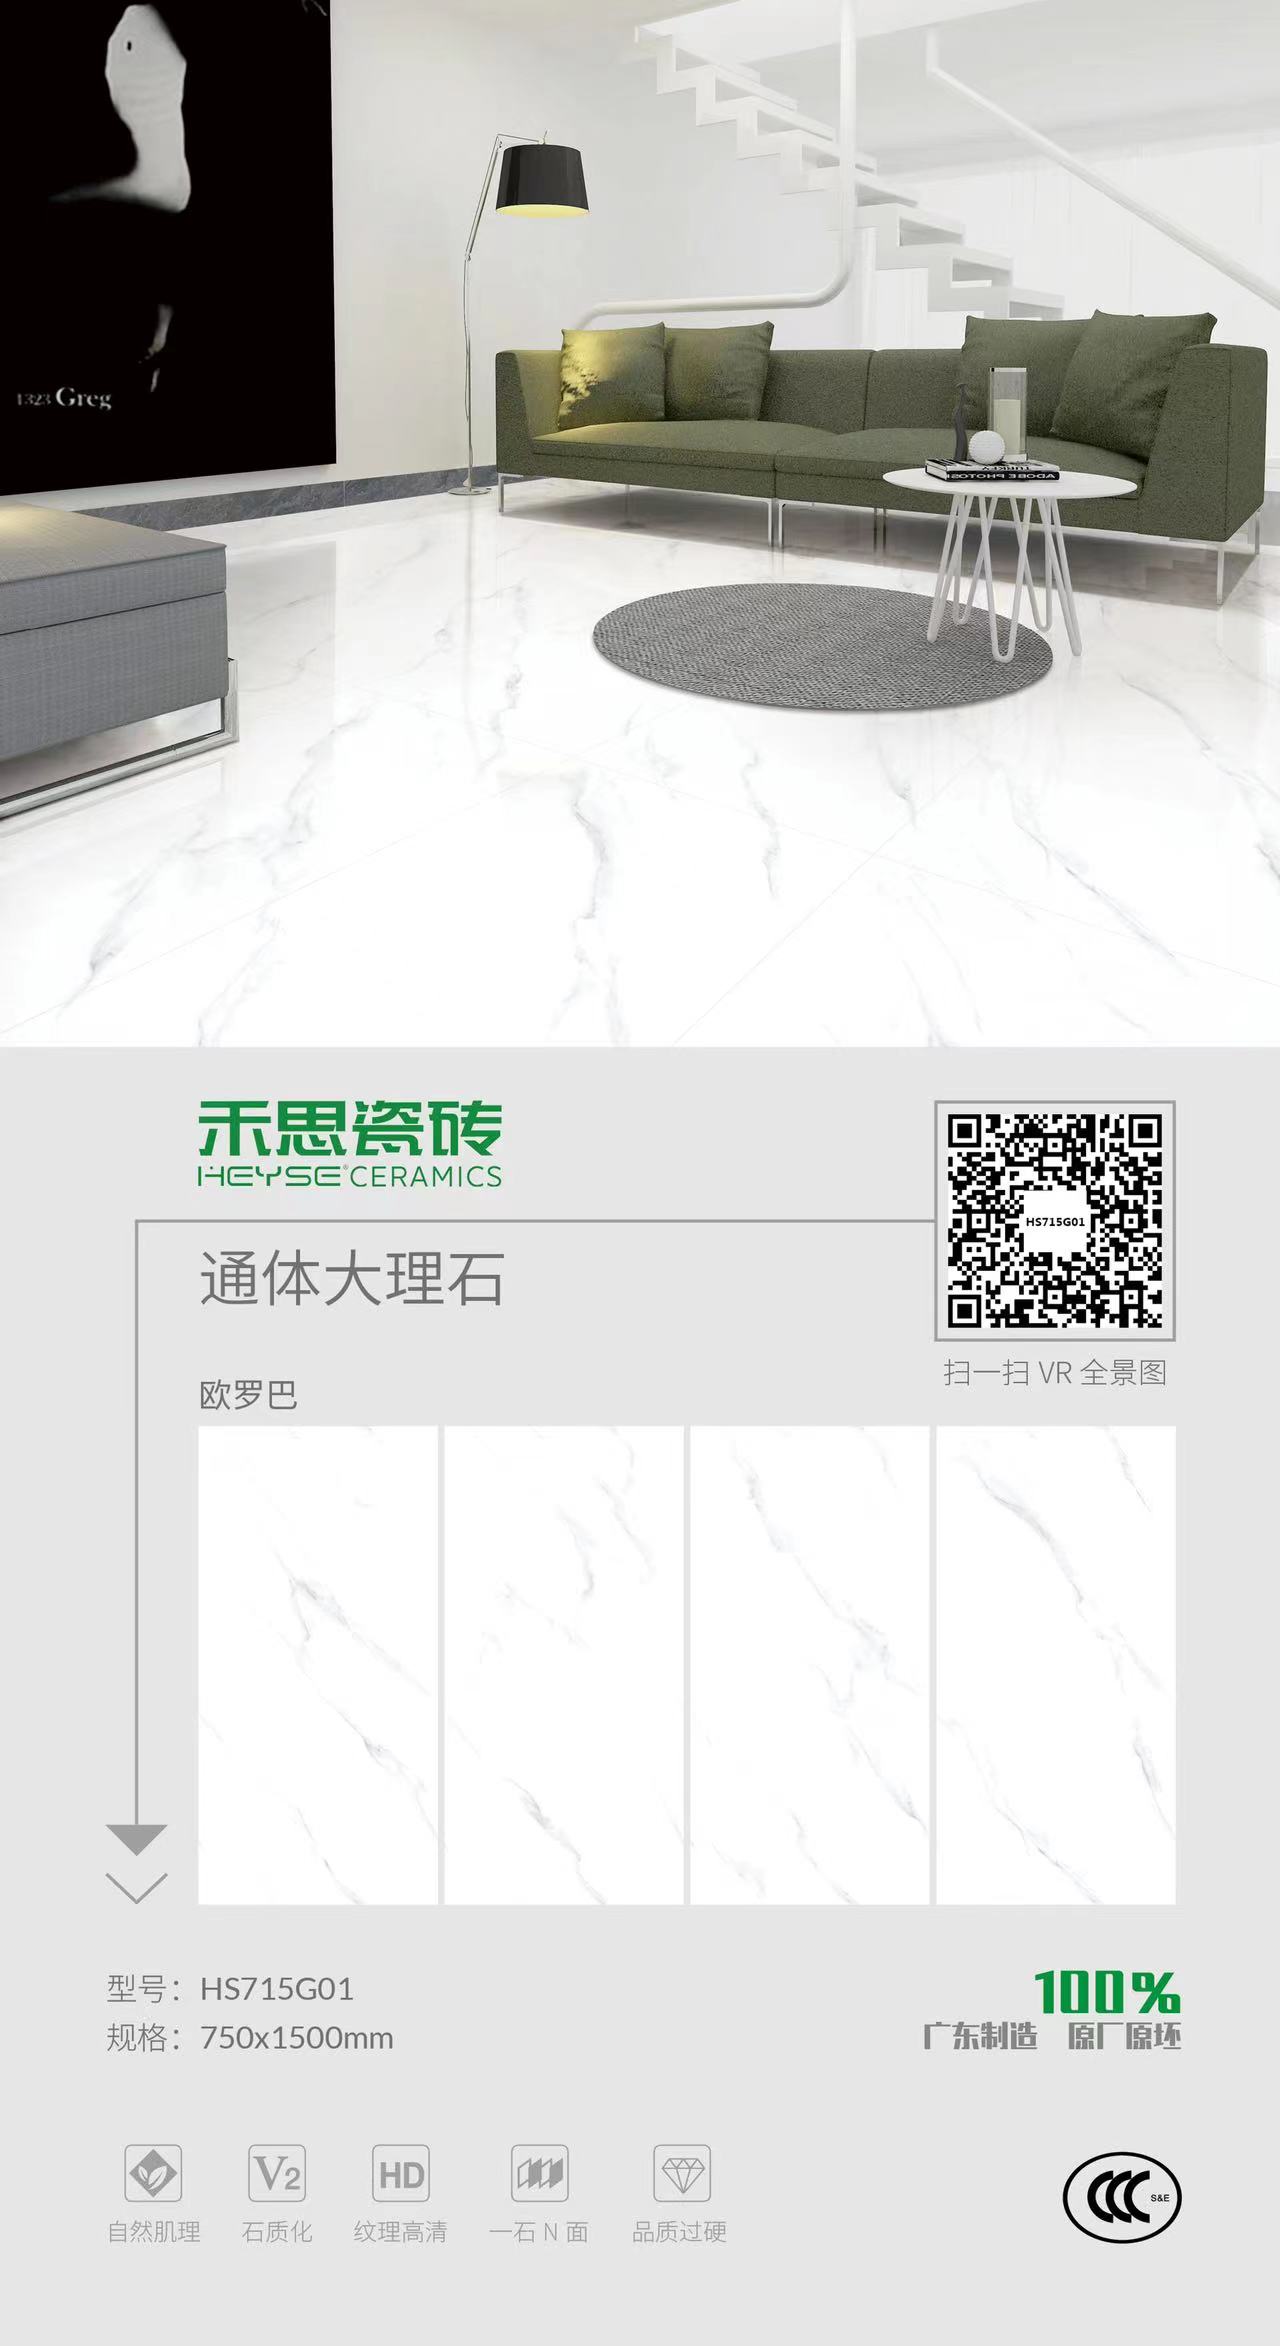 Morden Building Material White Lvt/Spc/PVC/Rubber/Ceramic/Porcelain/Granite  Plastichybrid Luxury Vinyl Floor Plank Tile - China Spc Flooring, Flooring